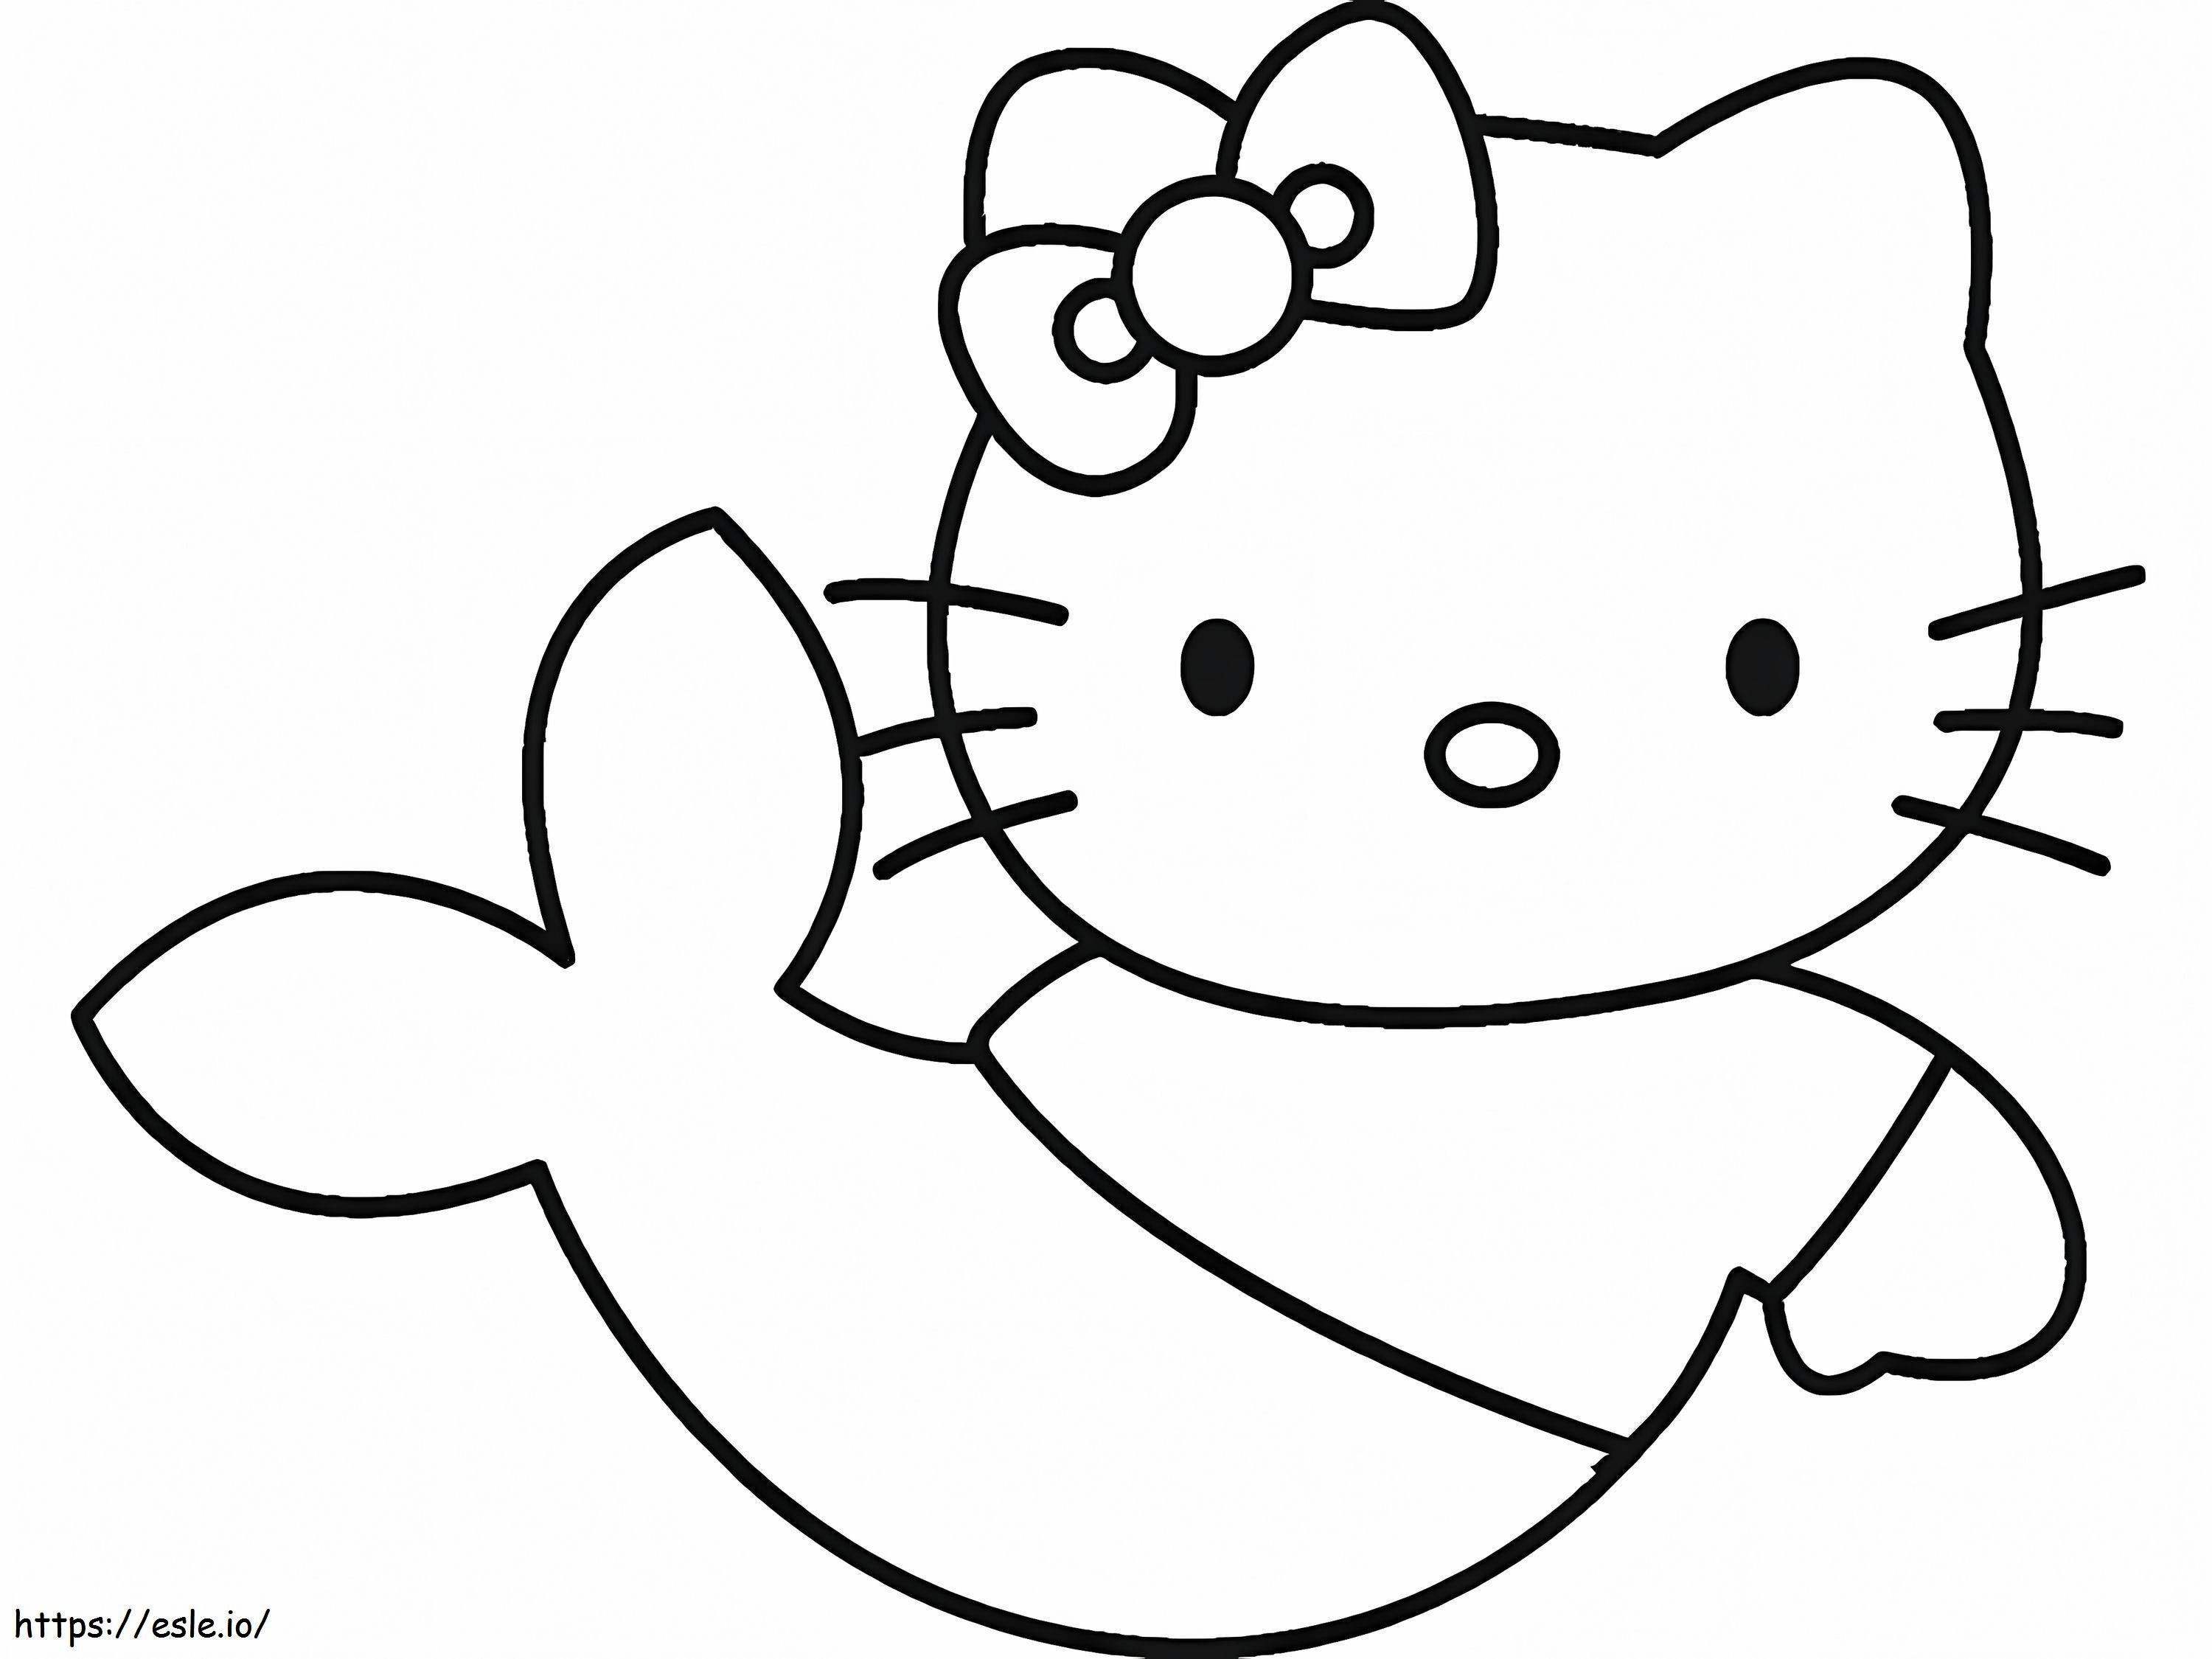 Semplice sirena Hello Kitty da colorare